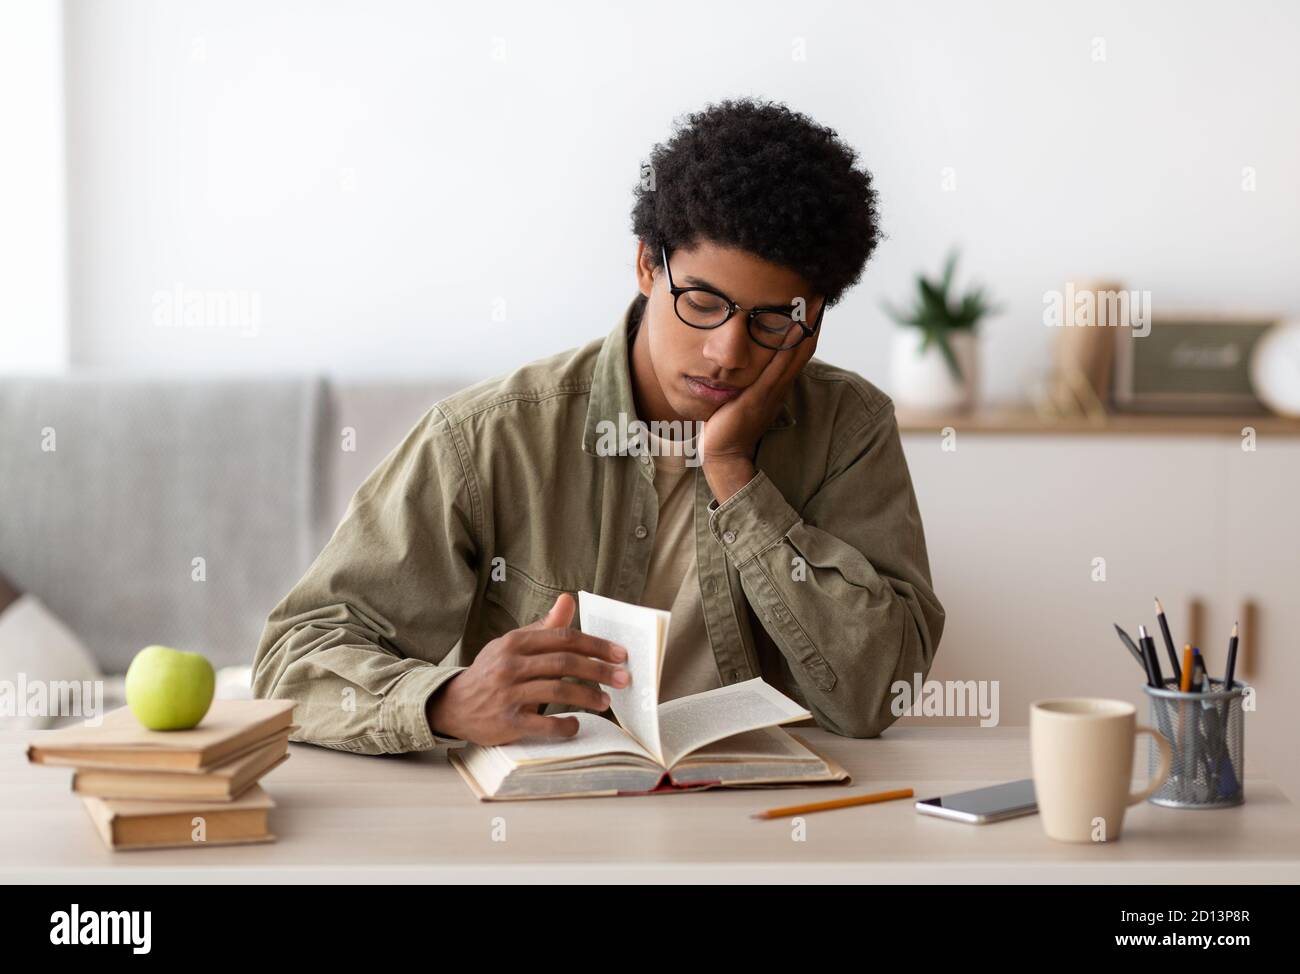 Un adolescent afro-américain ennuyé lisant un manuel, se prépare à un examen compliqué à la maison Banque D'Images